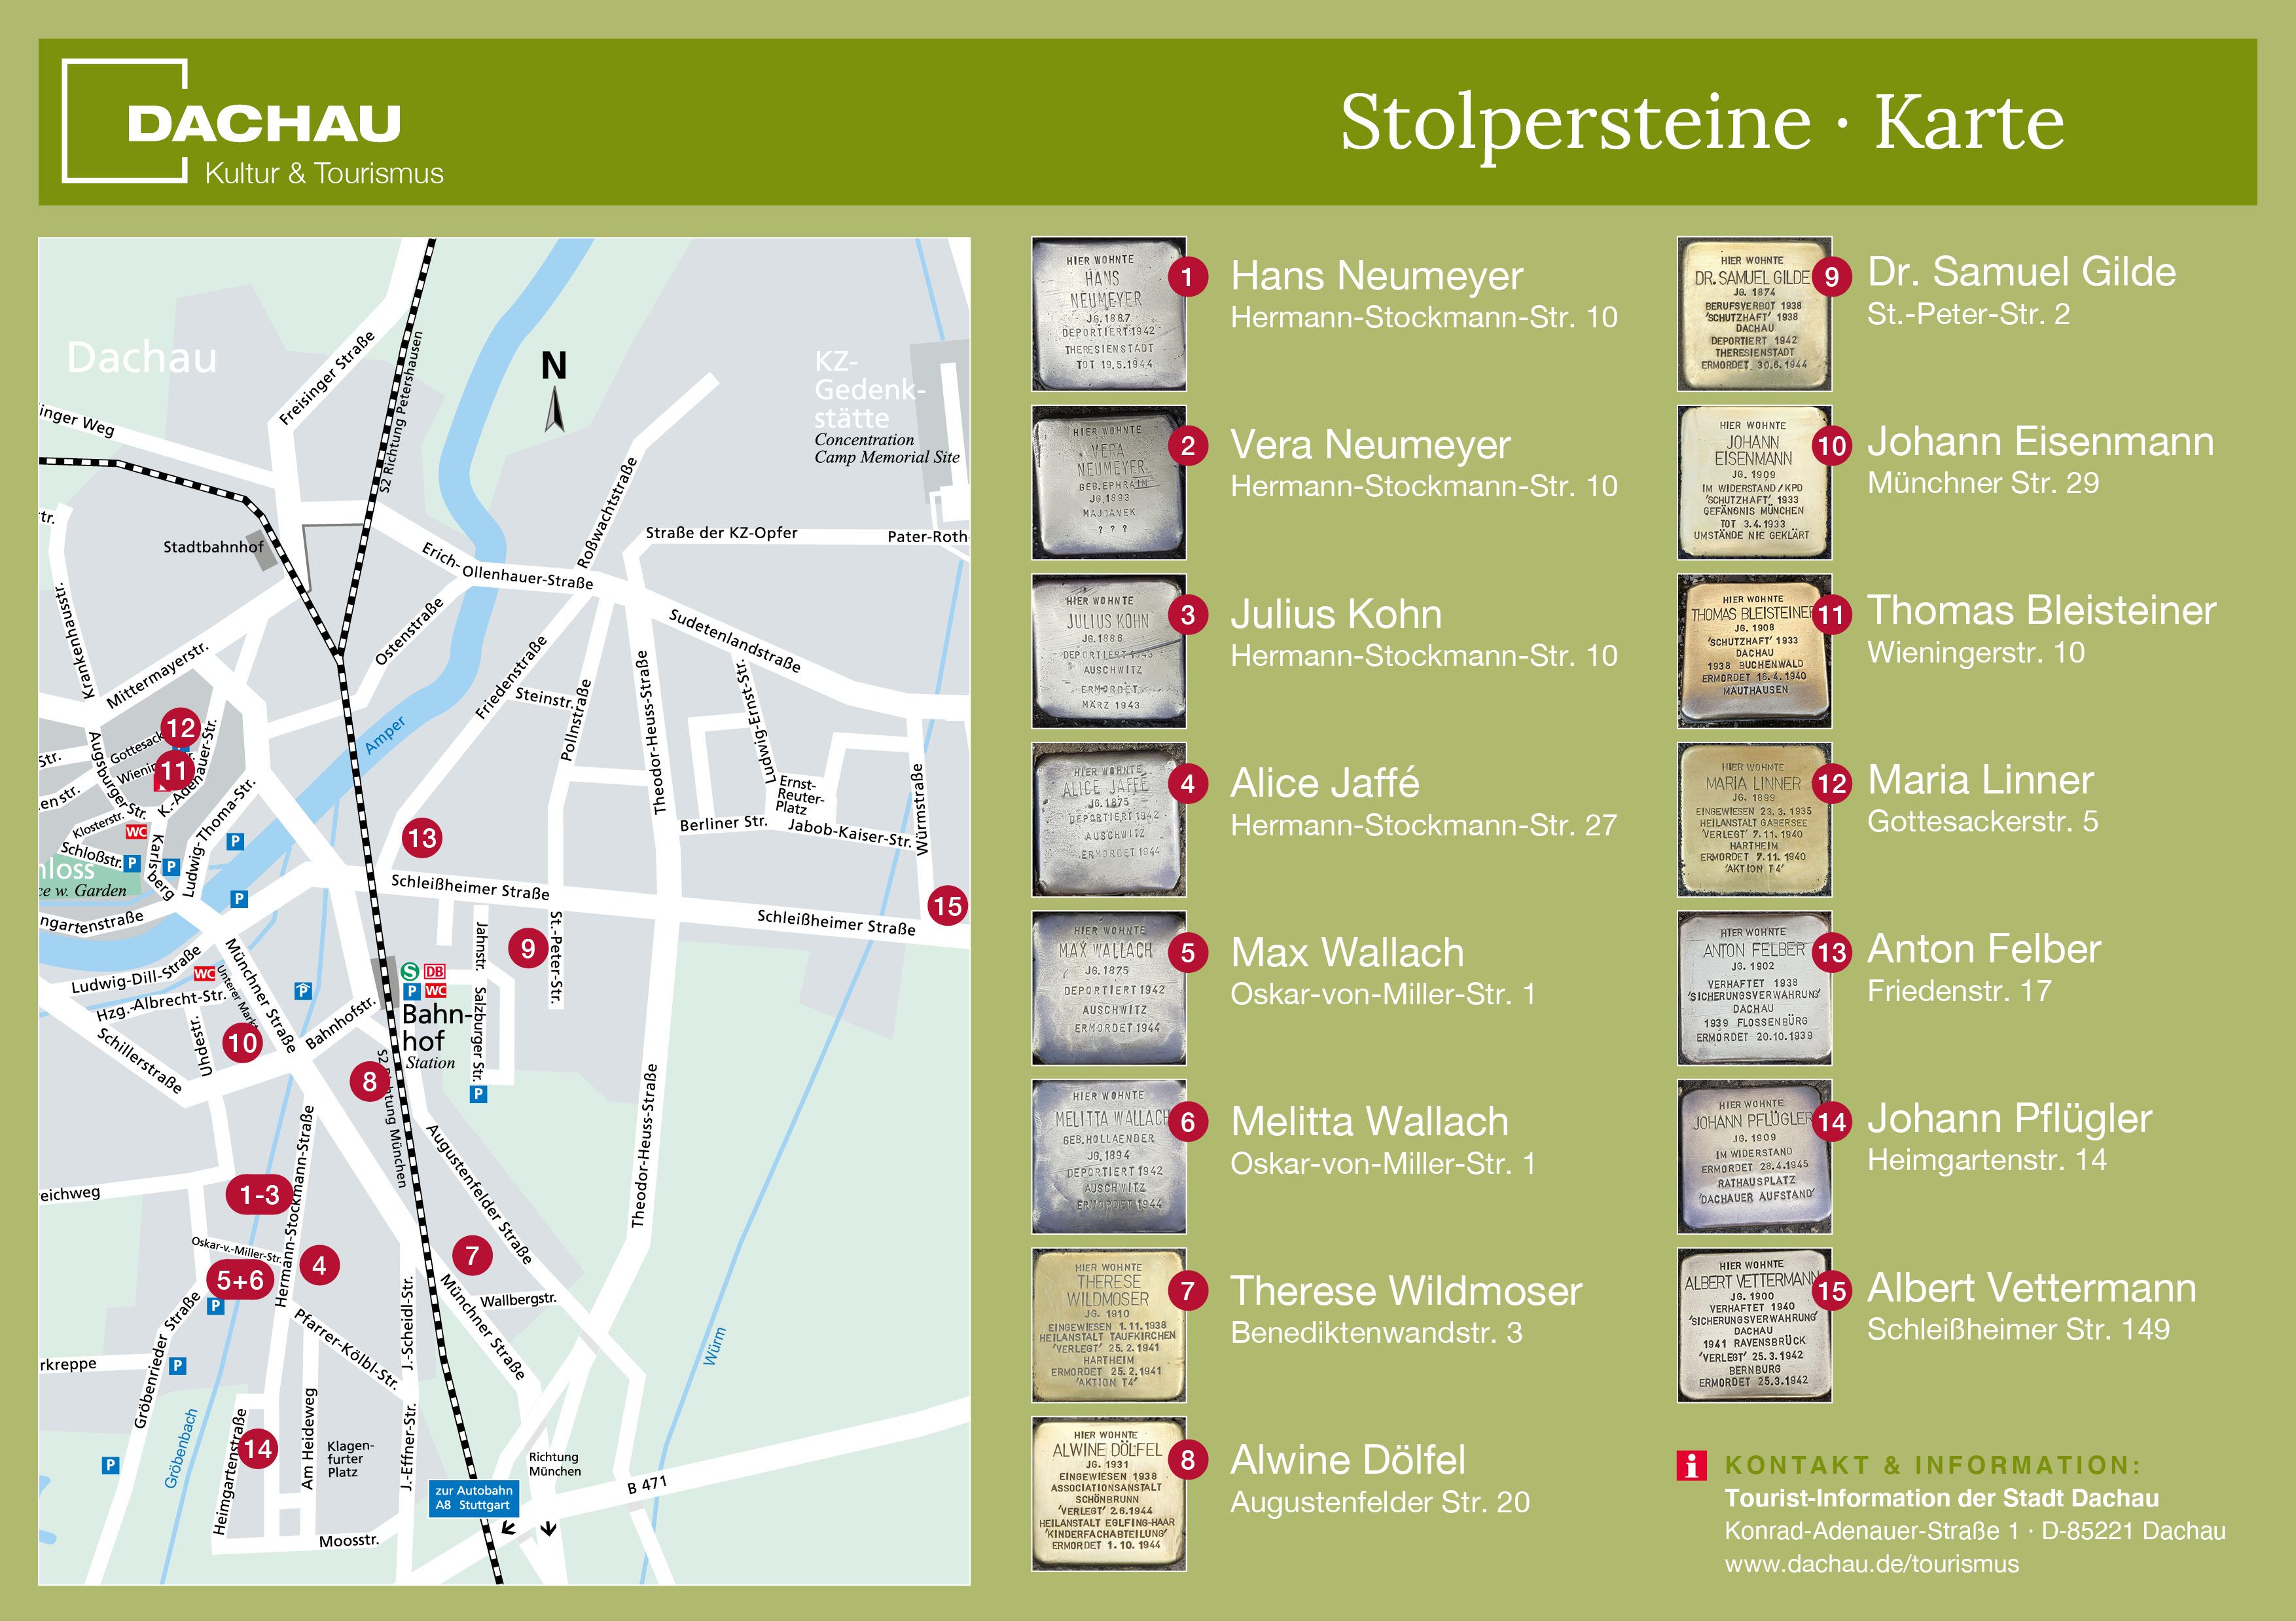 Stadtplan von Dachau mit allen in Dachau verlegten Stolpersteinen.